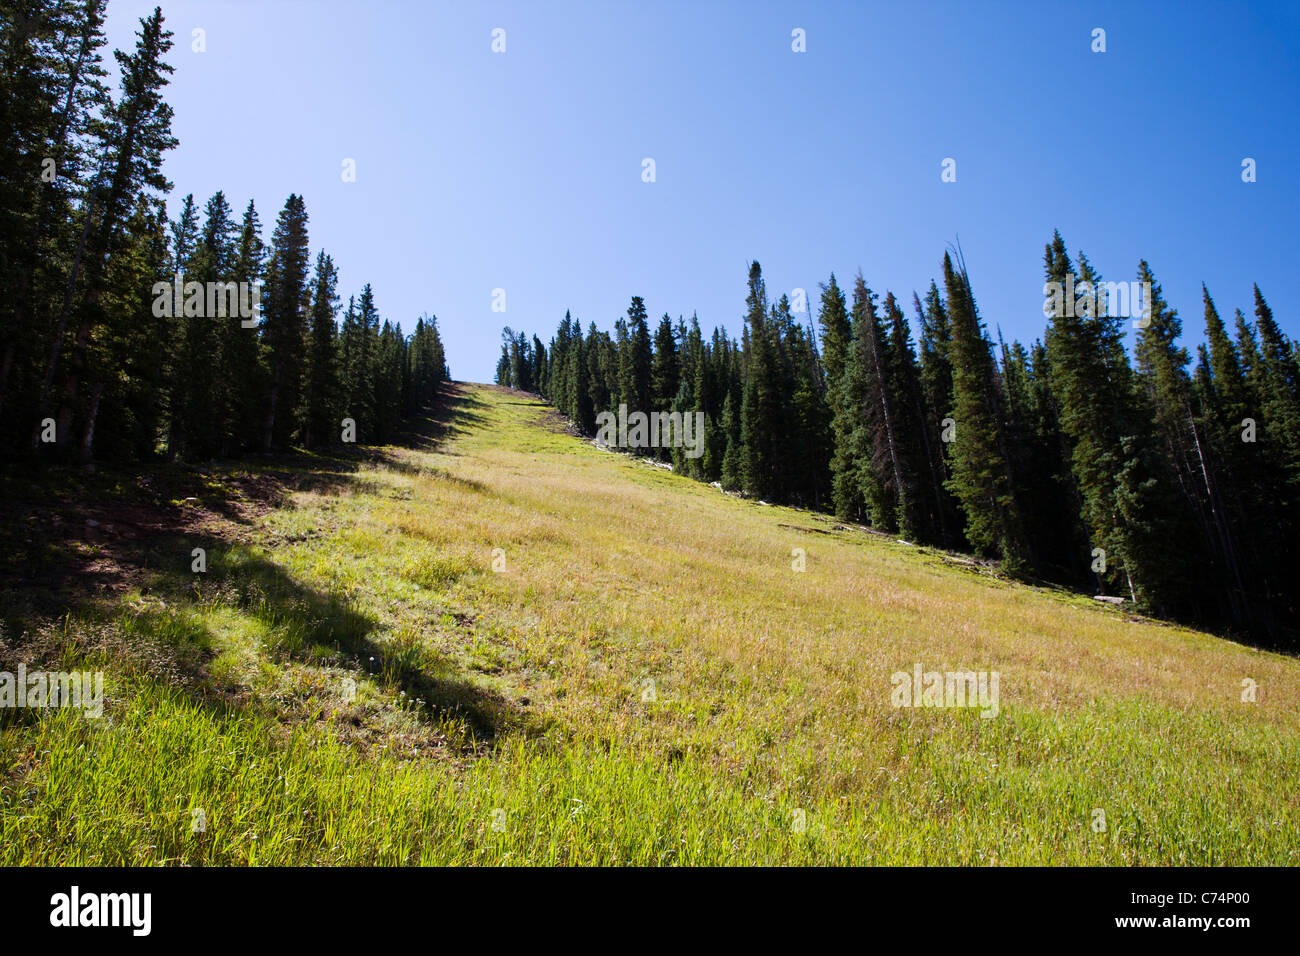 Vista estiva di Monarch Mountain ski area situata a 10,790' altitudine nella gamma Sawatch delle Montagne Rocciose, Colorado, STATI UNITI D'AMERICA Foto Stock